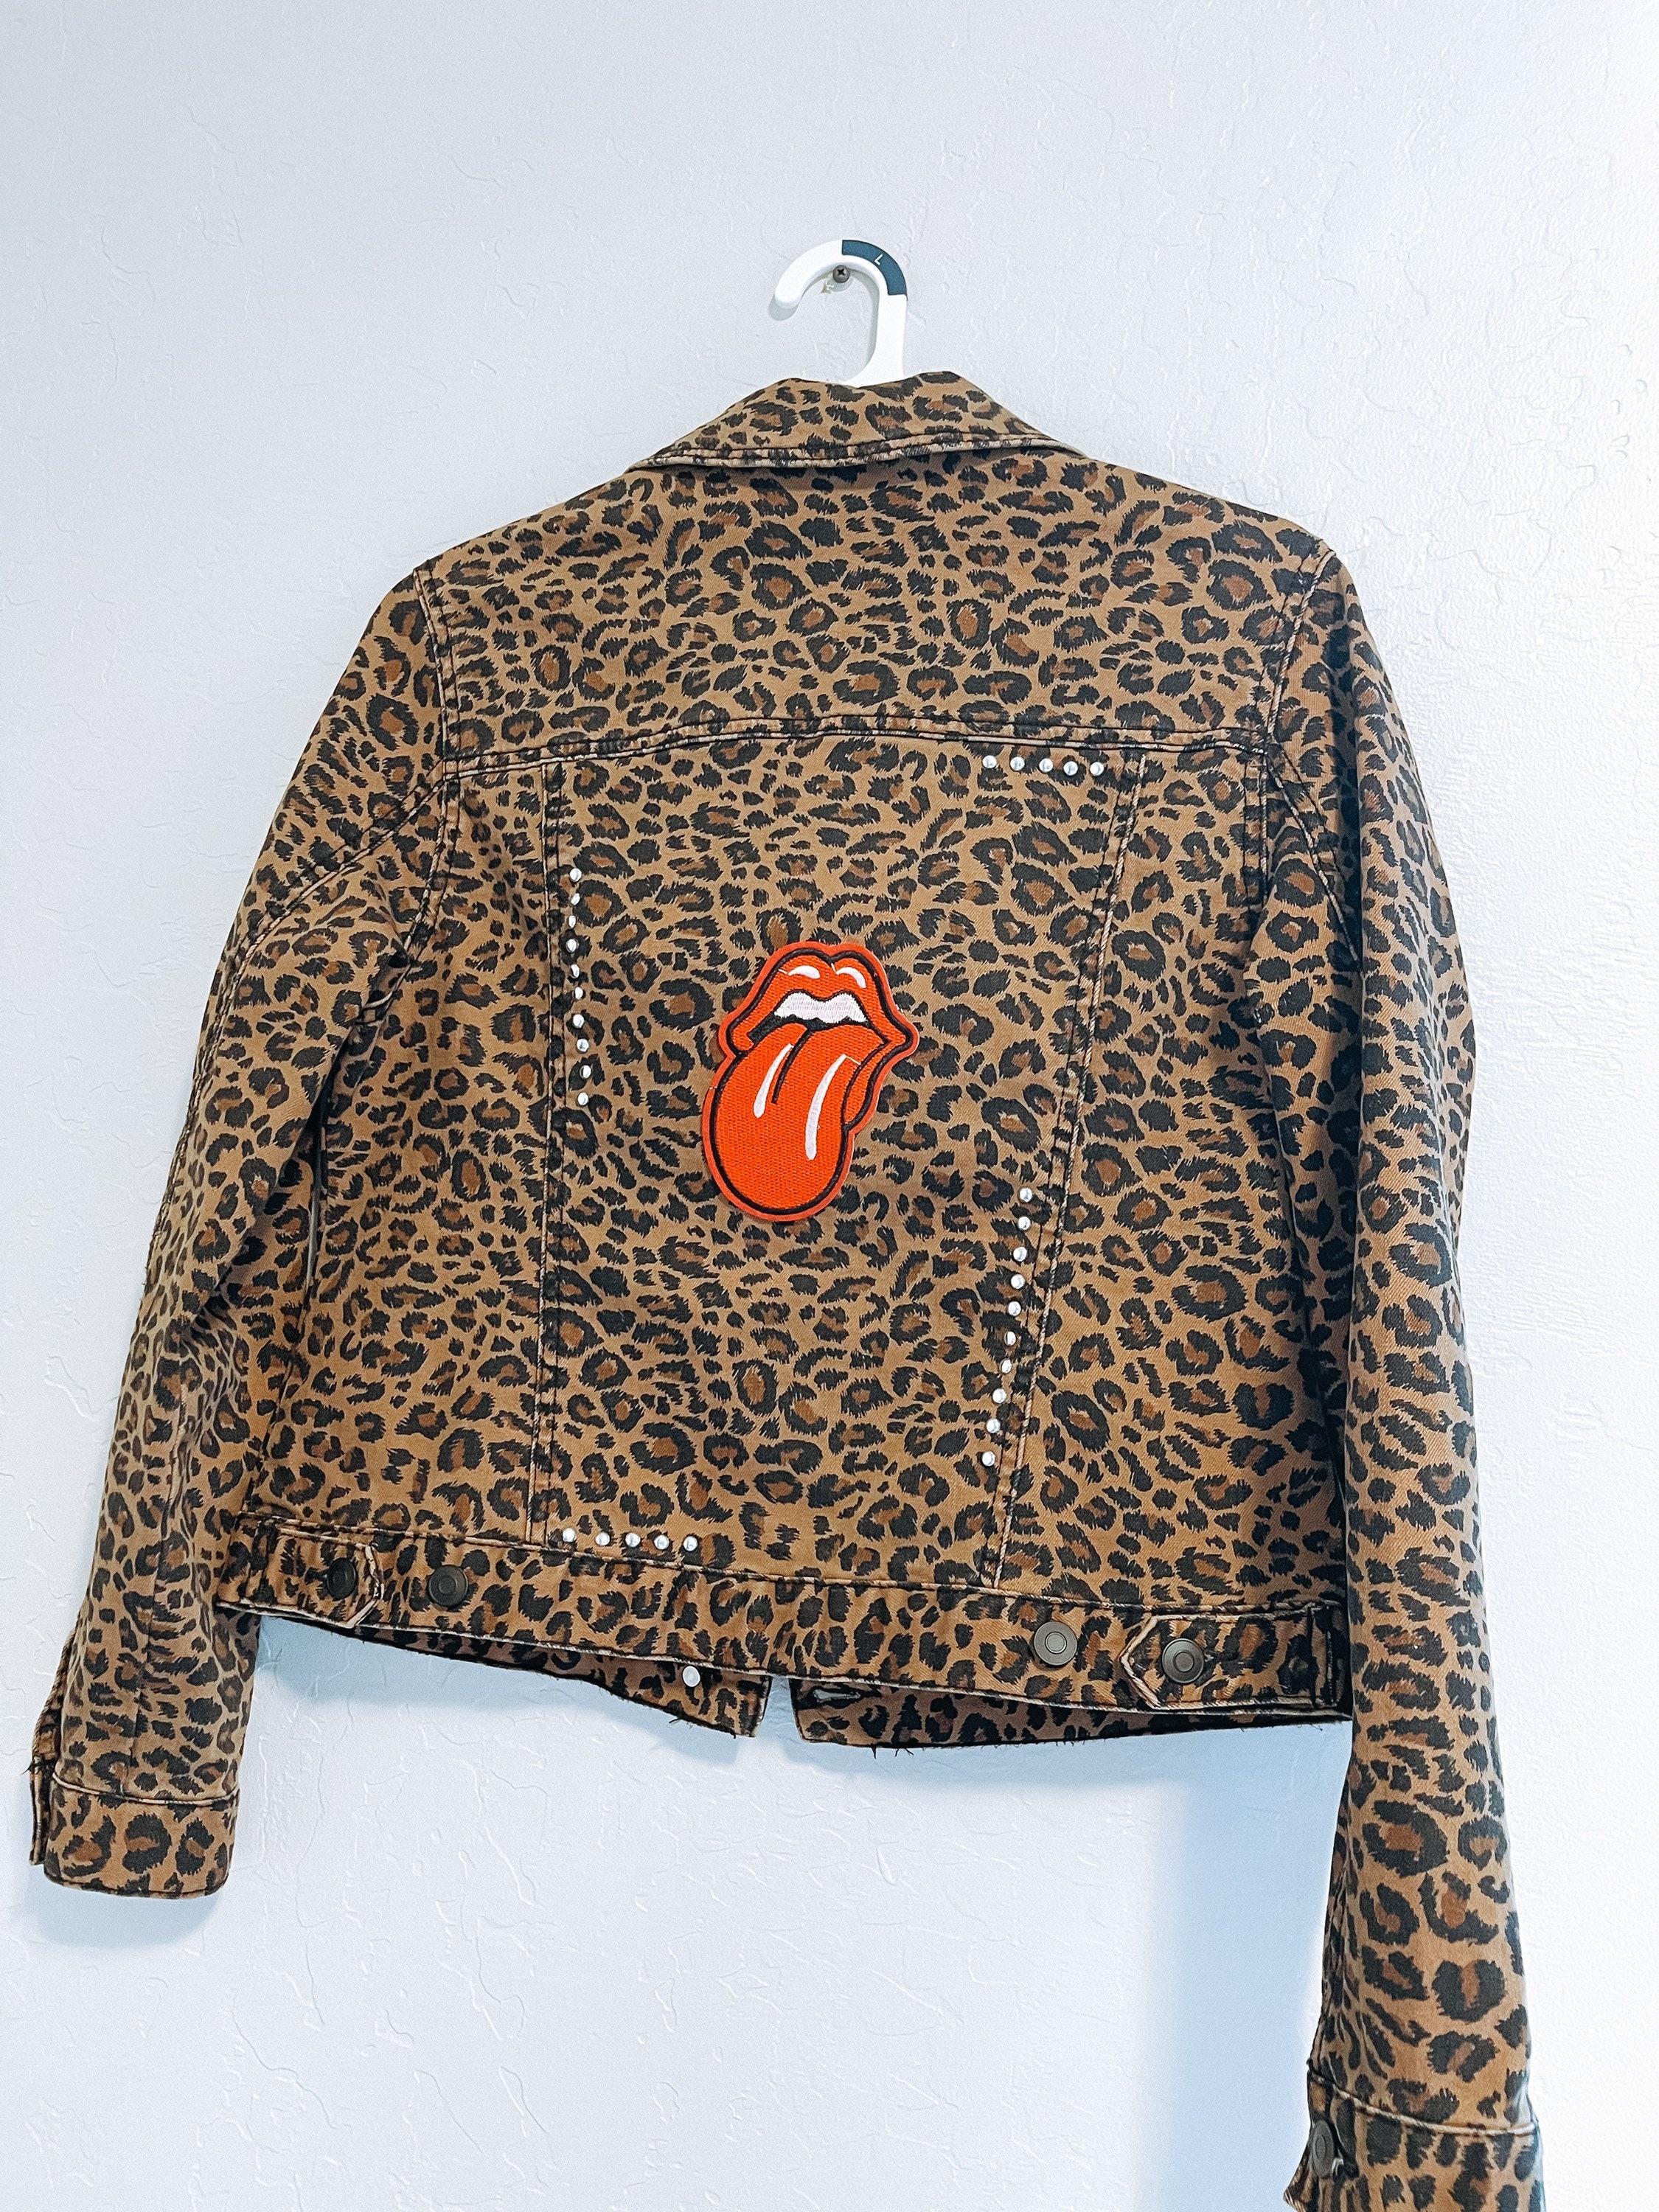 Leopard womens jacket | Etsy